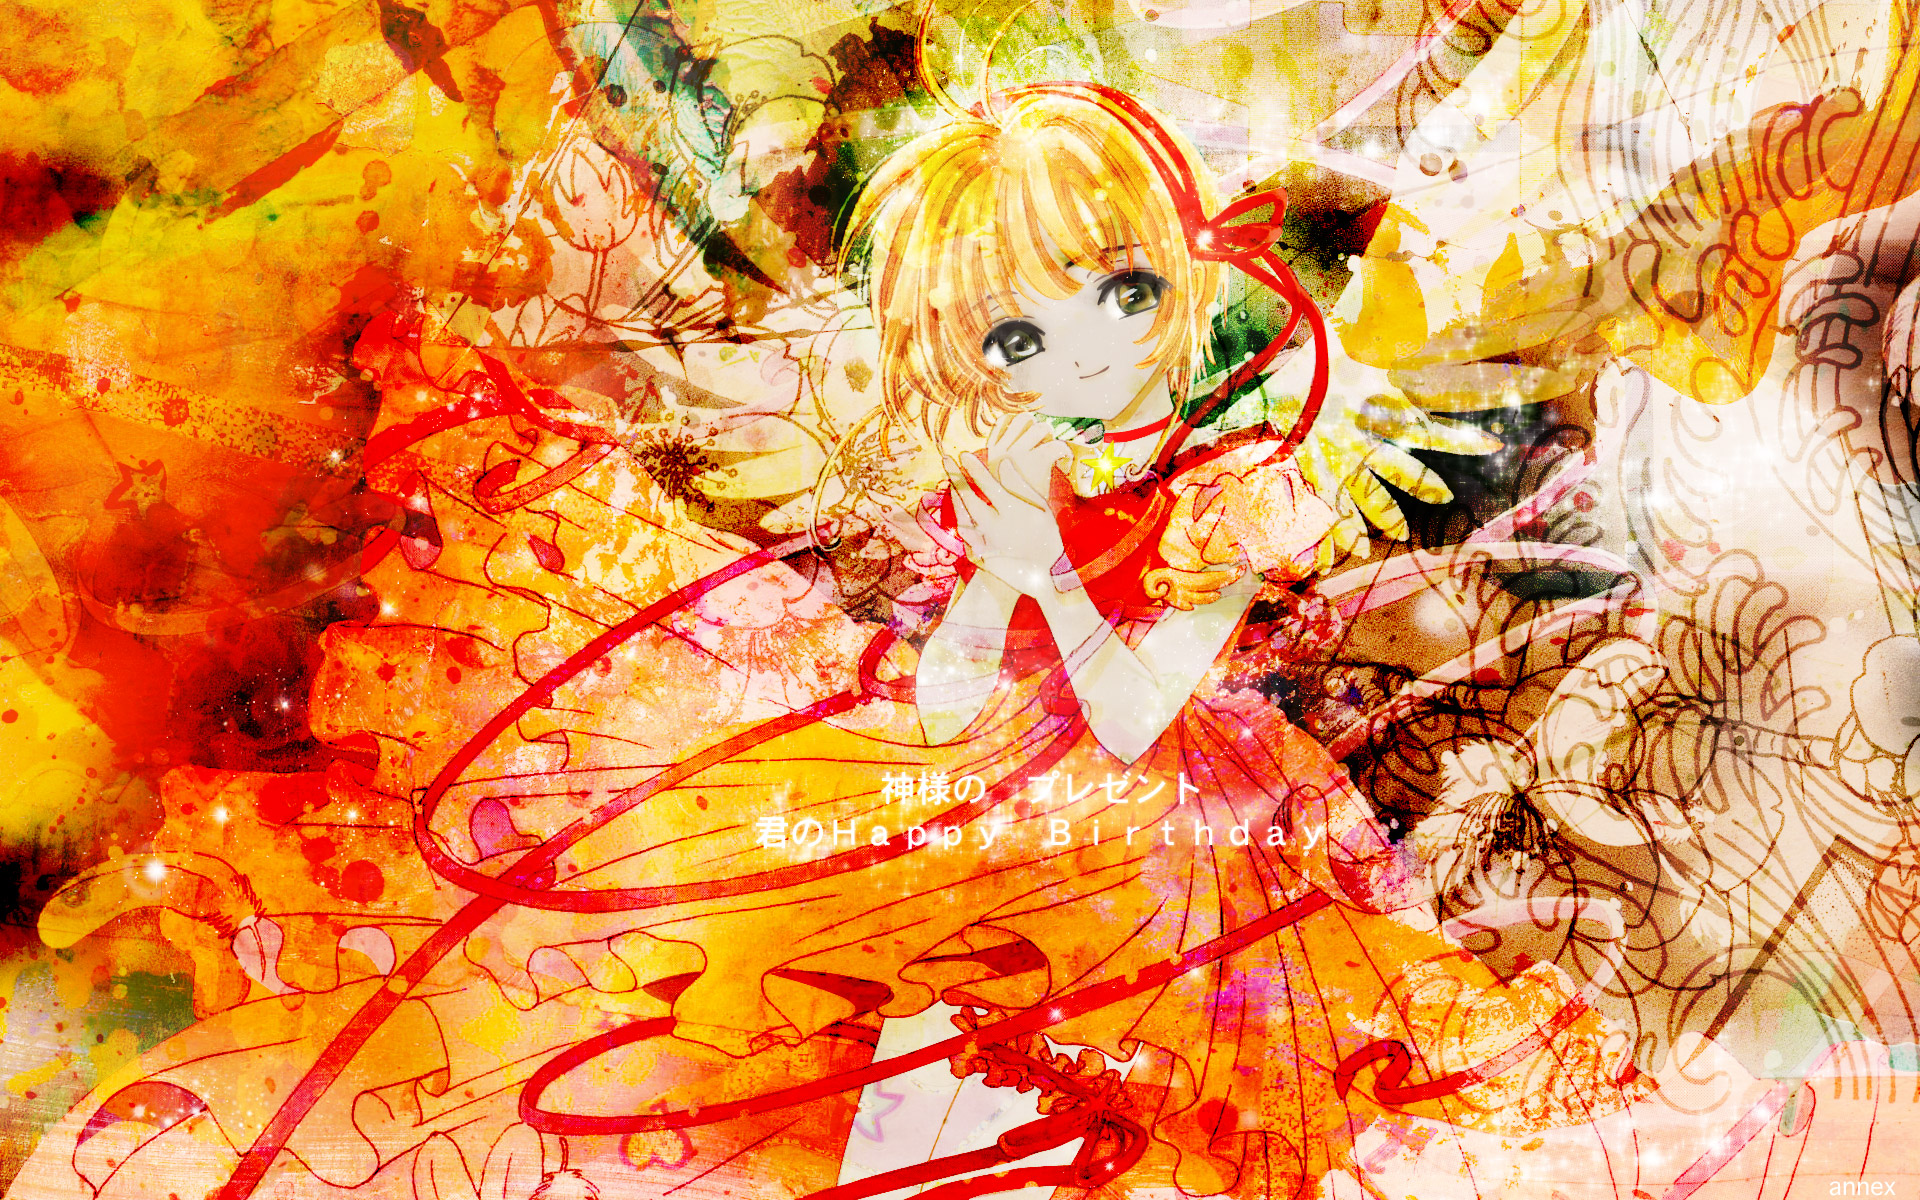 Cardcaptor Sakura, Kinomoto Sakura - desktop wallpaper